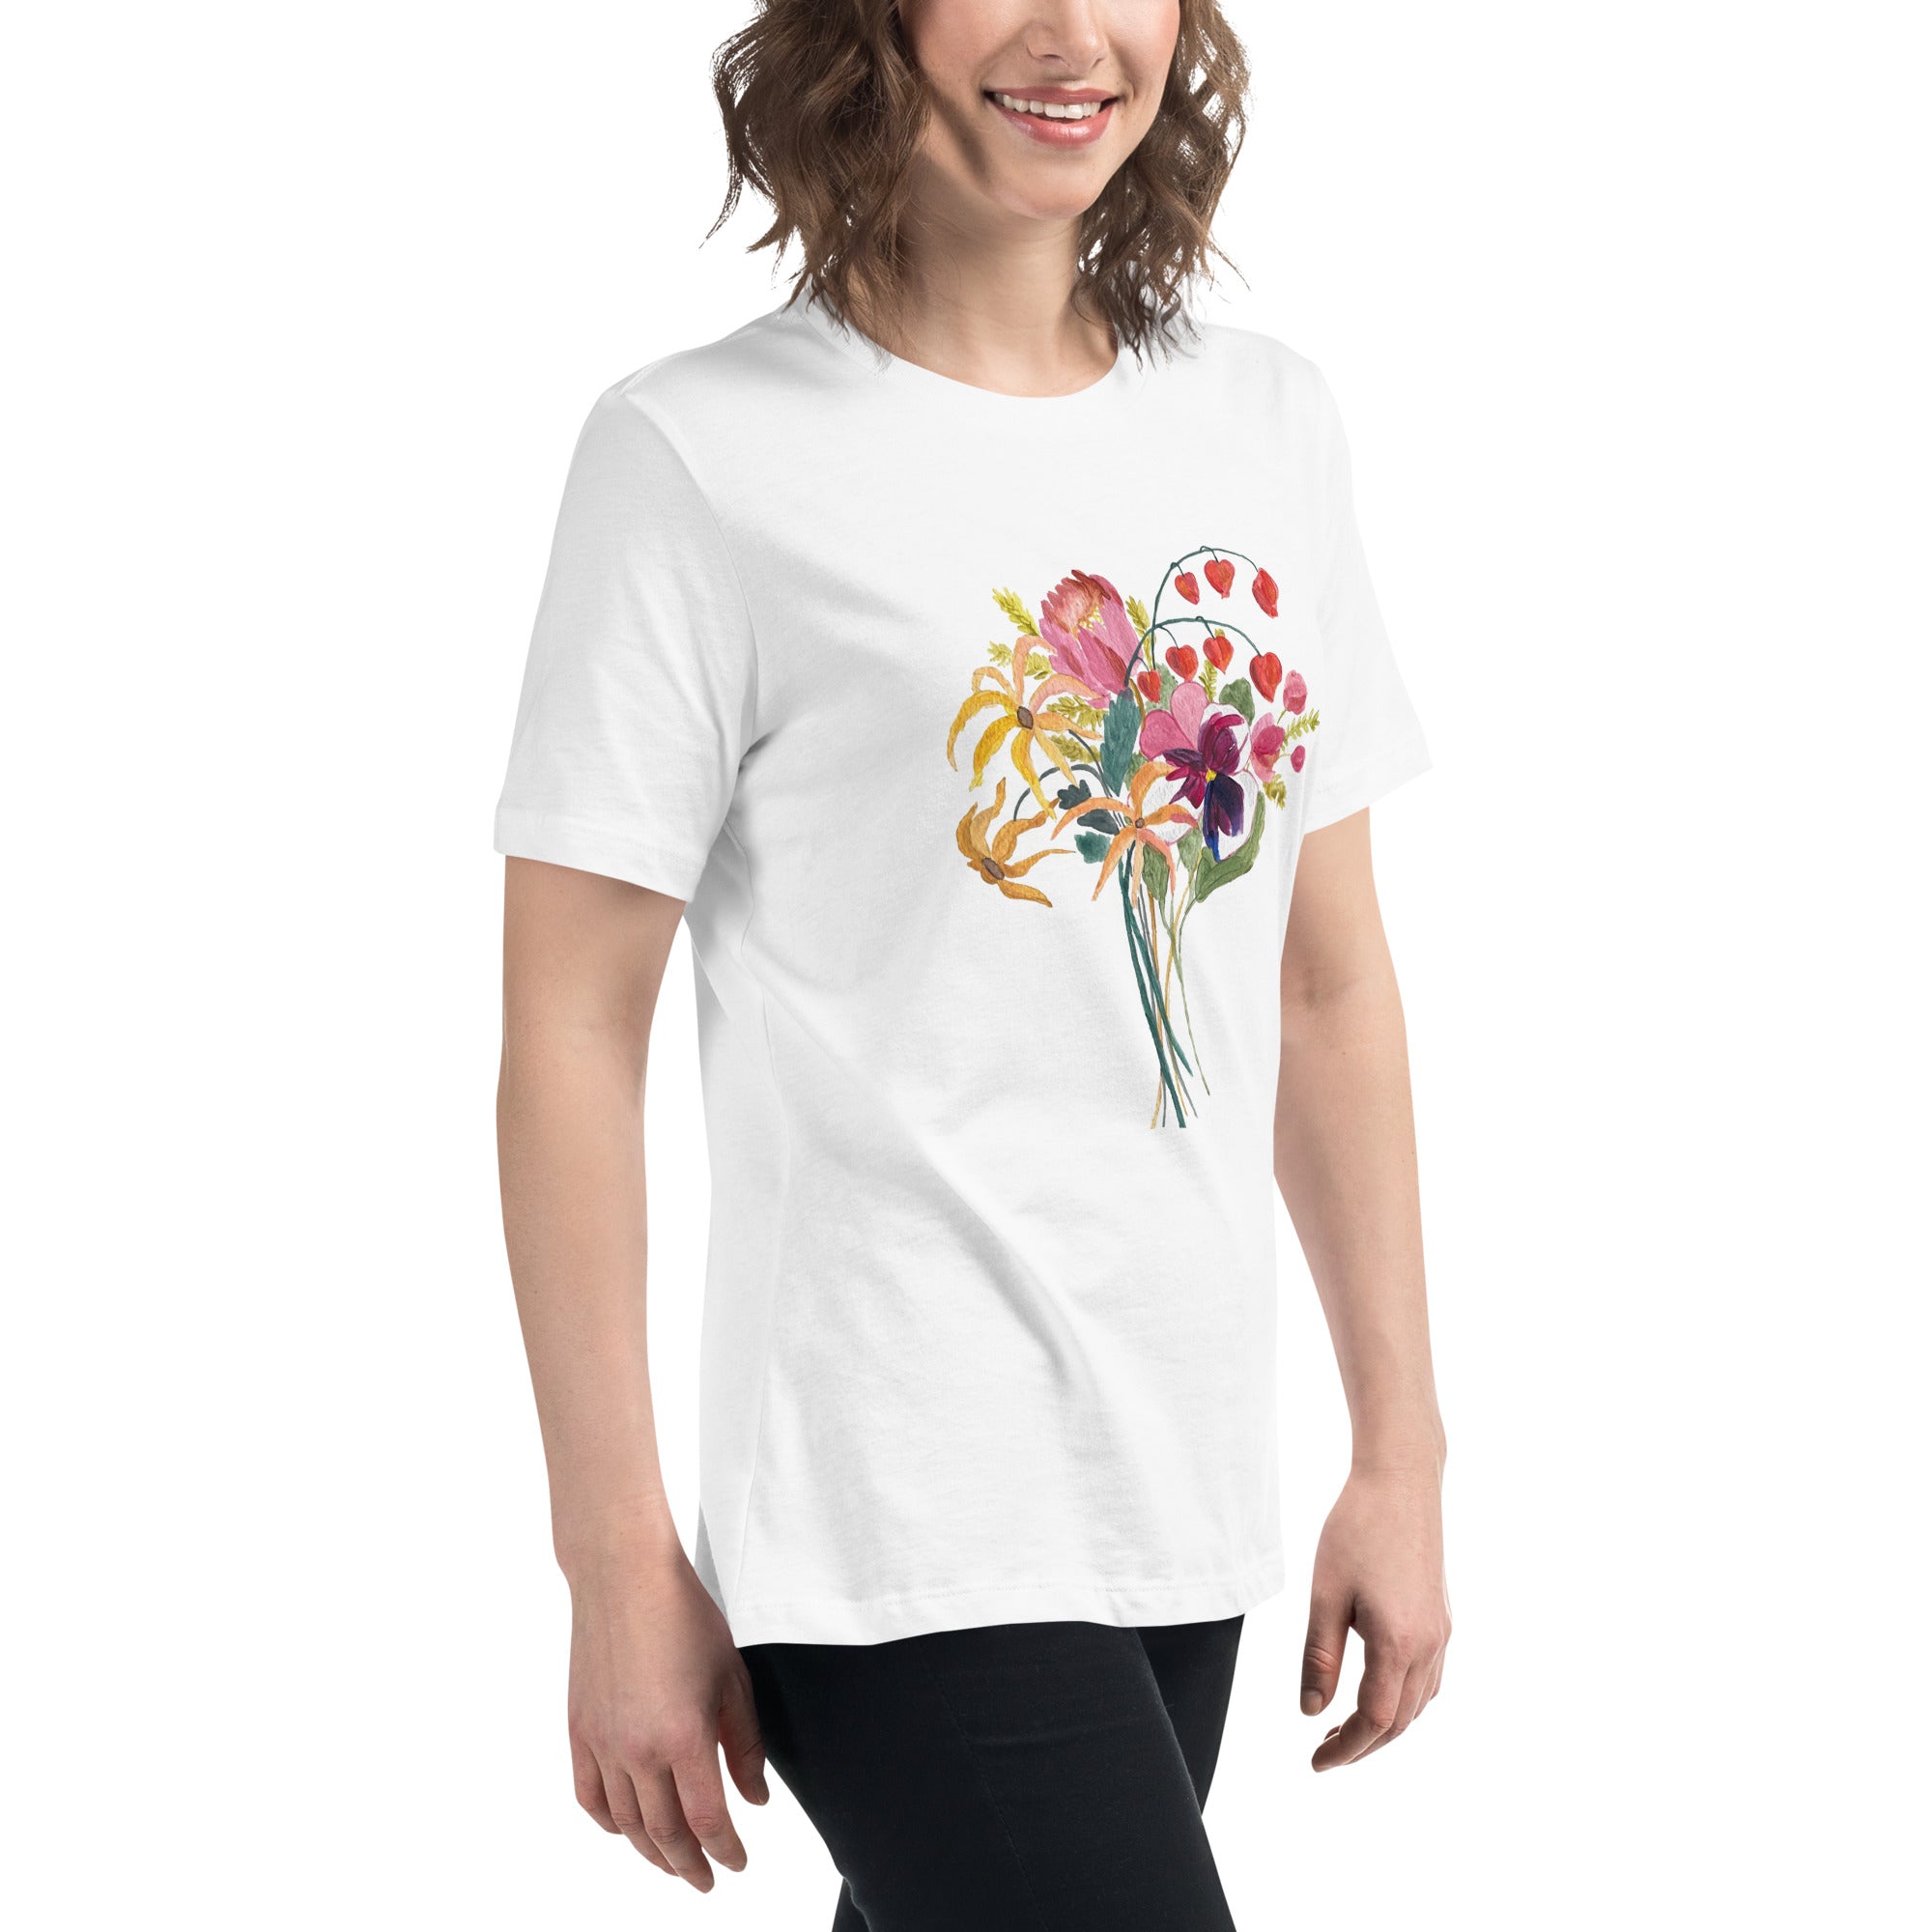 'Bouquet me up' short sleeve t-shirt